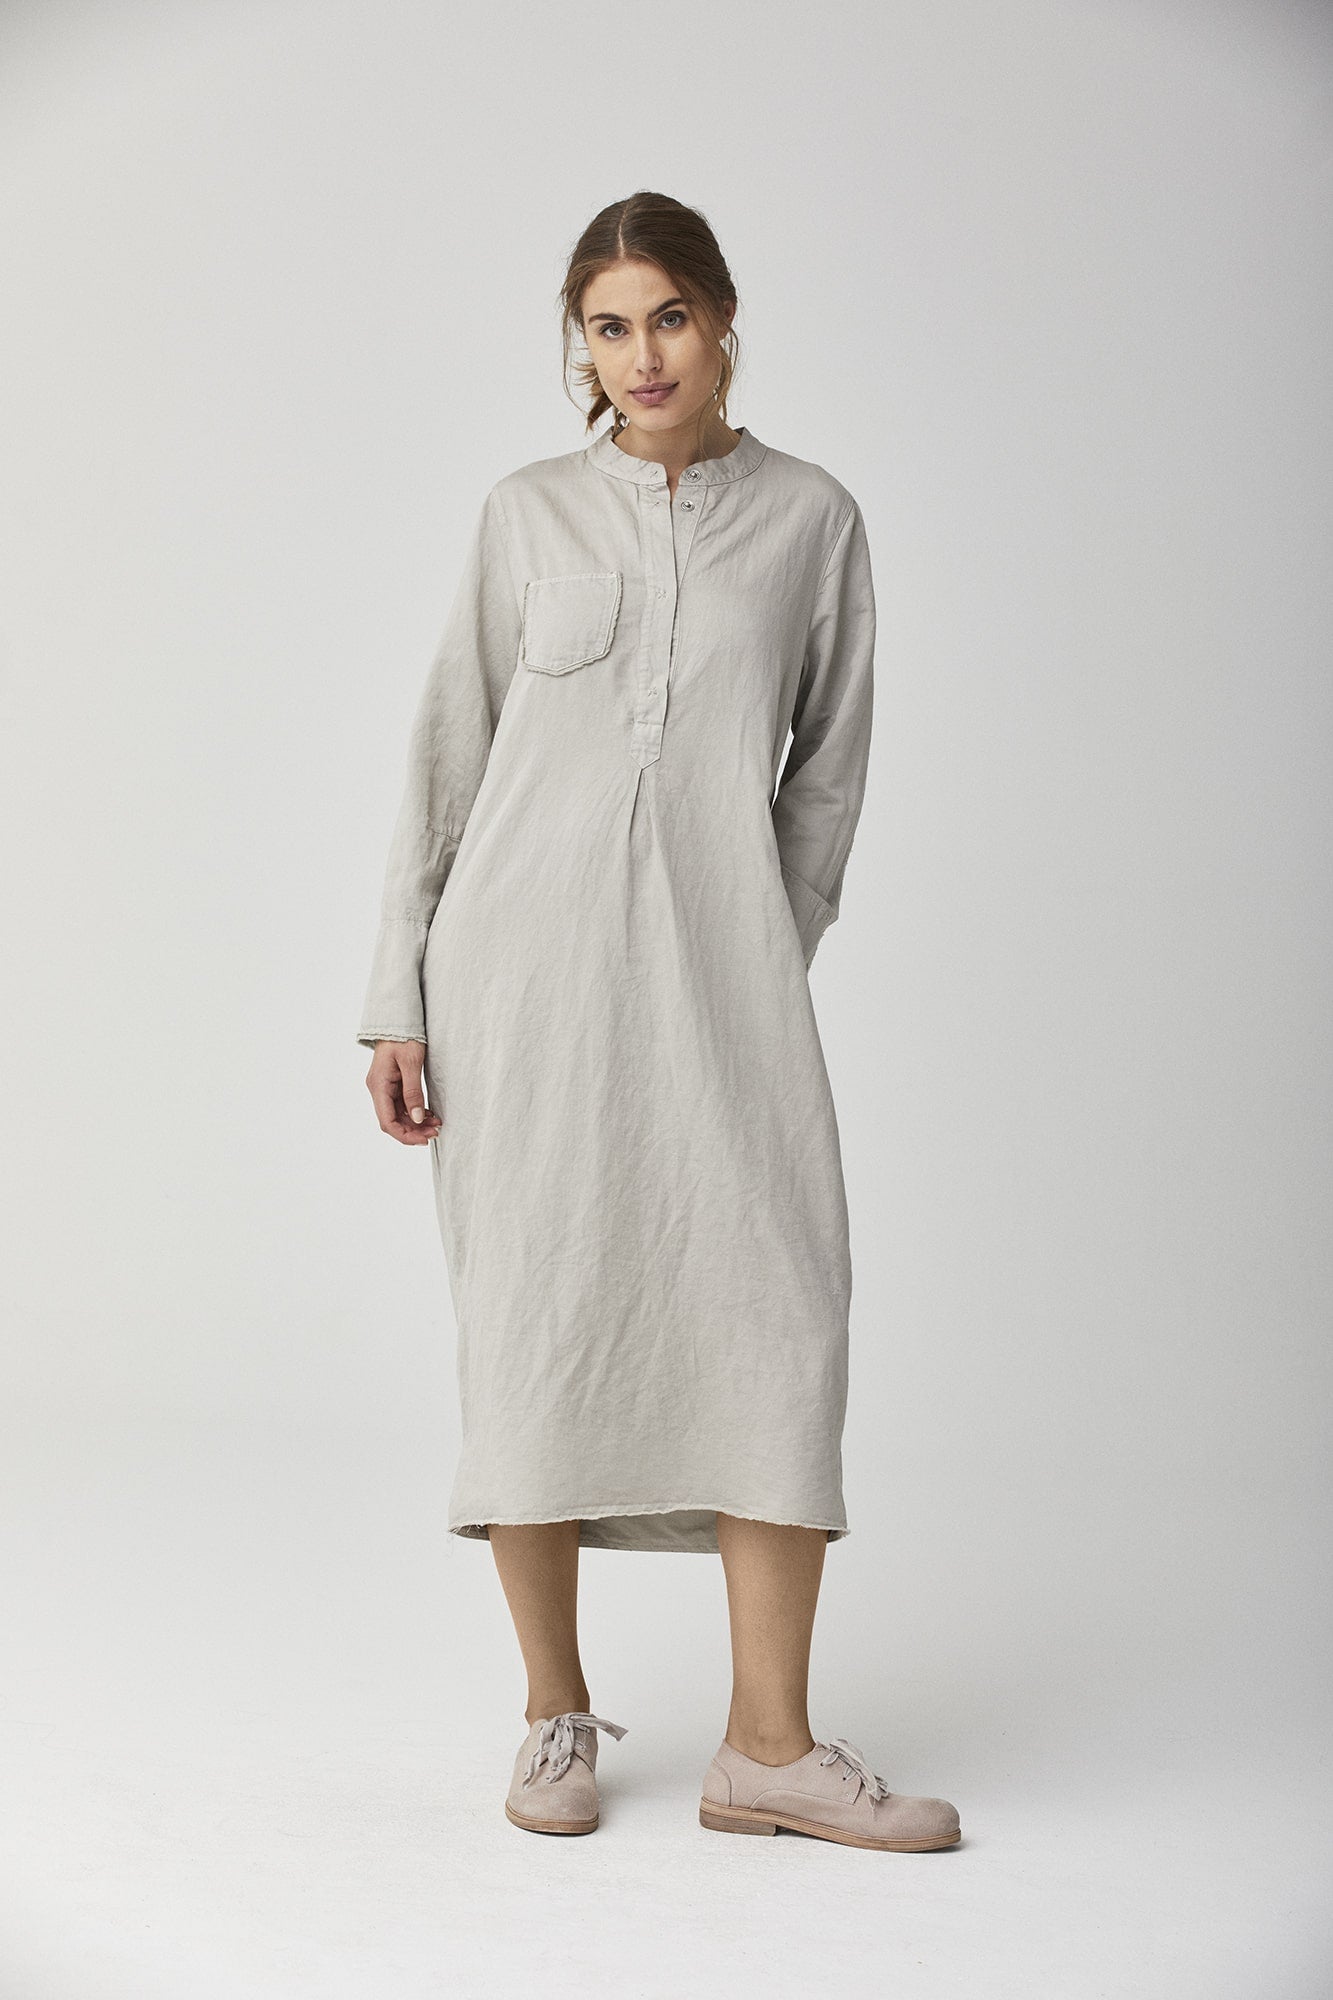 Cotton Linen Dress